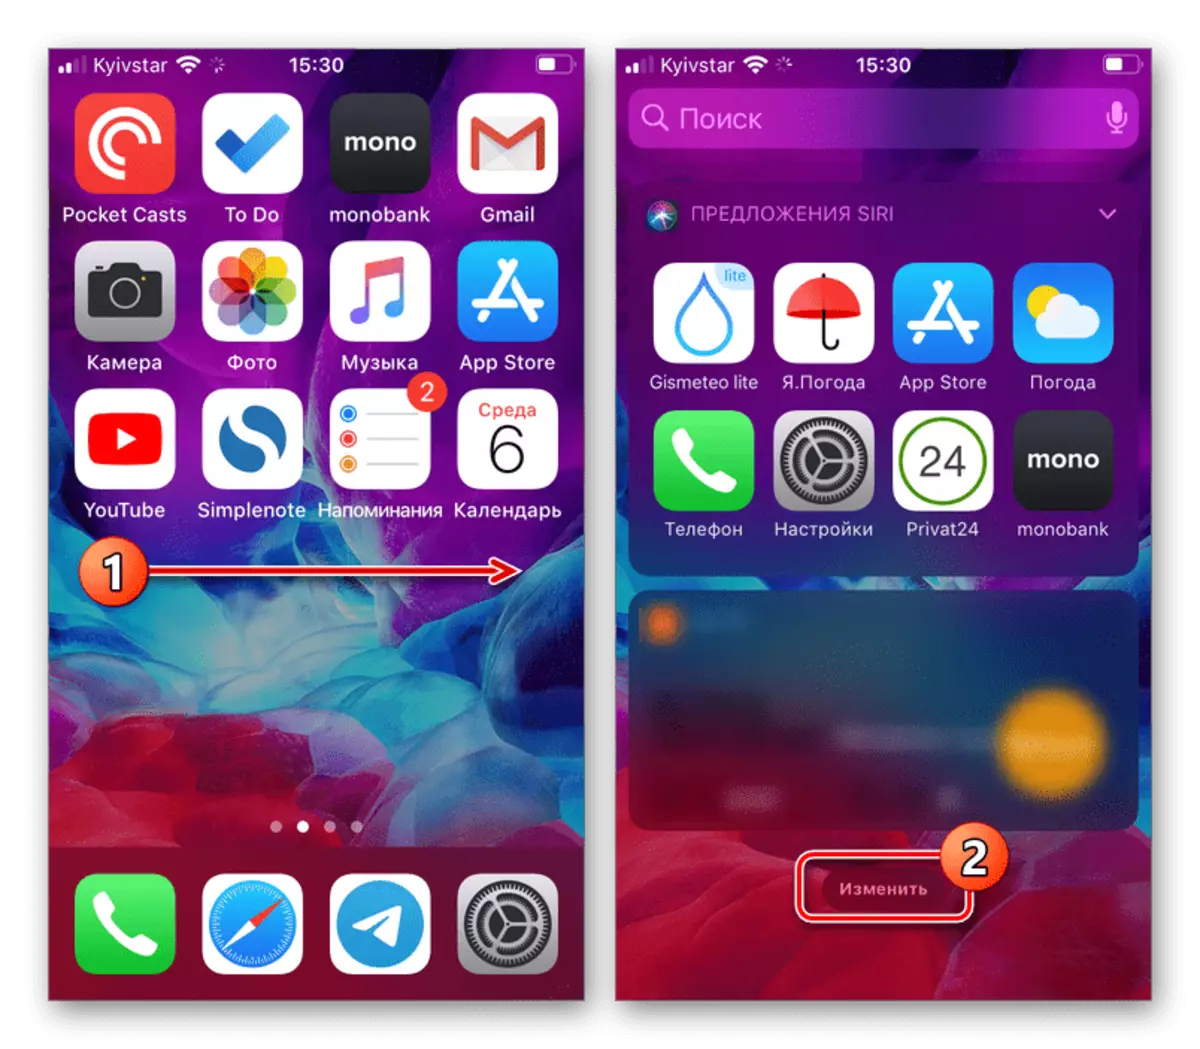 Chuyển đến thay đổi màn hình với các widget trên thiết bị iOS